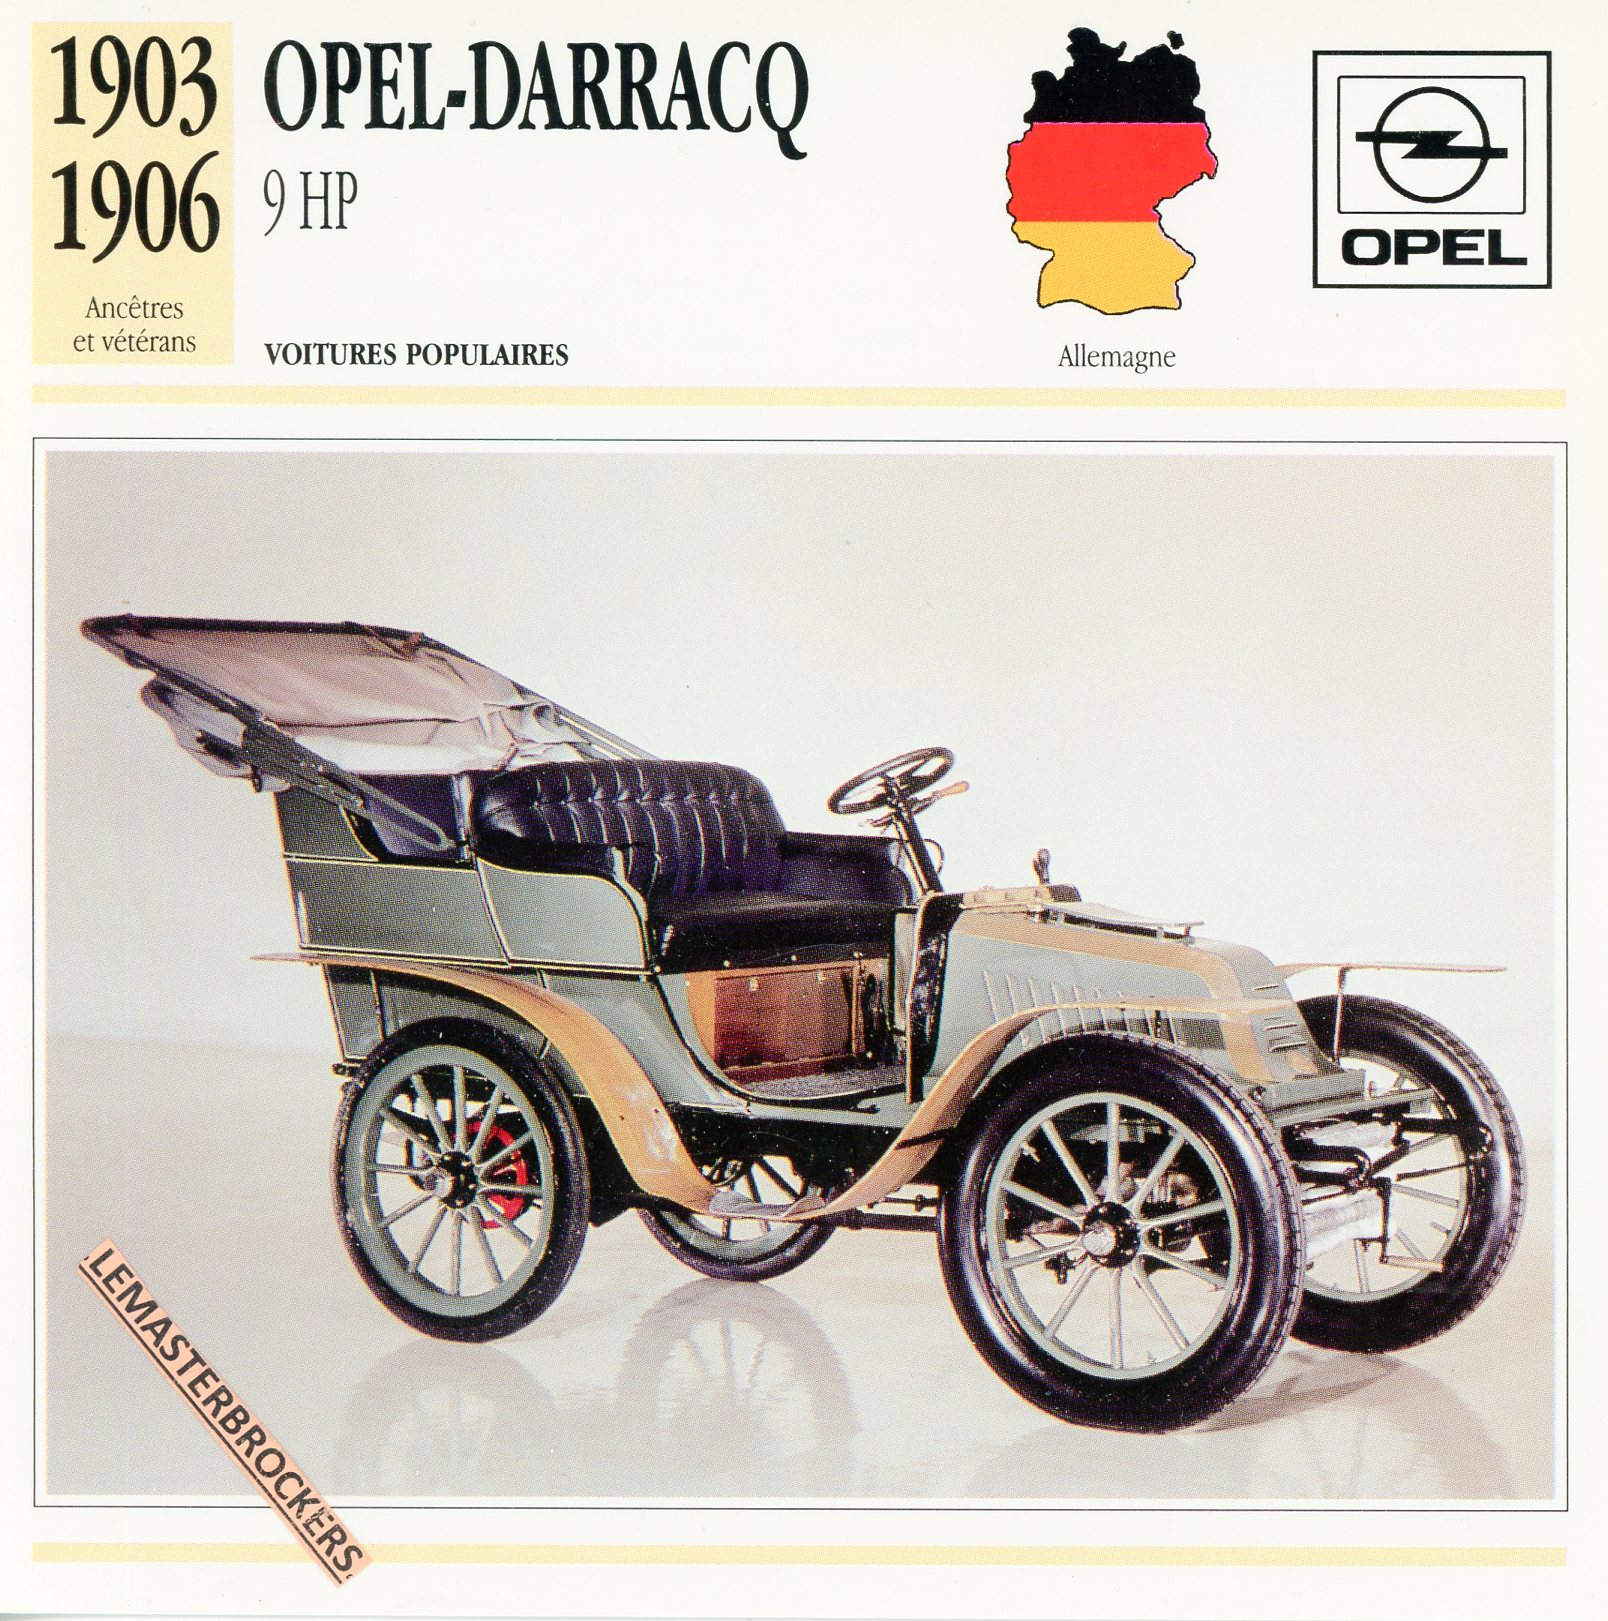 OPEL 9HP 1903 1906 - FICHE AUTO OPEL